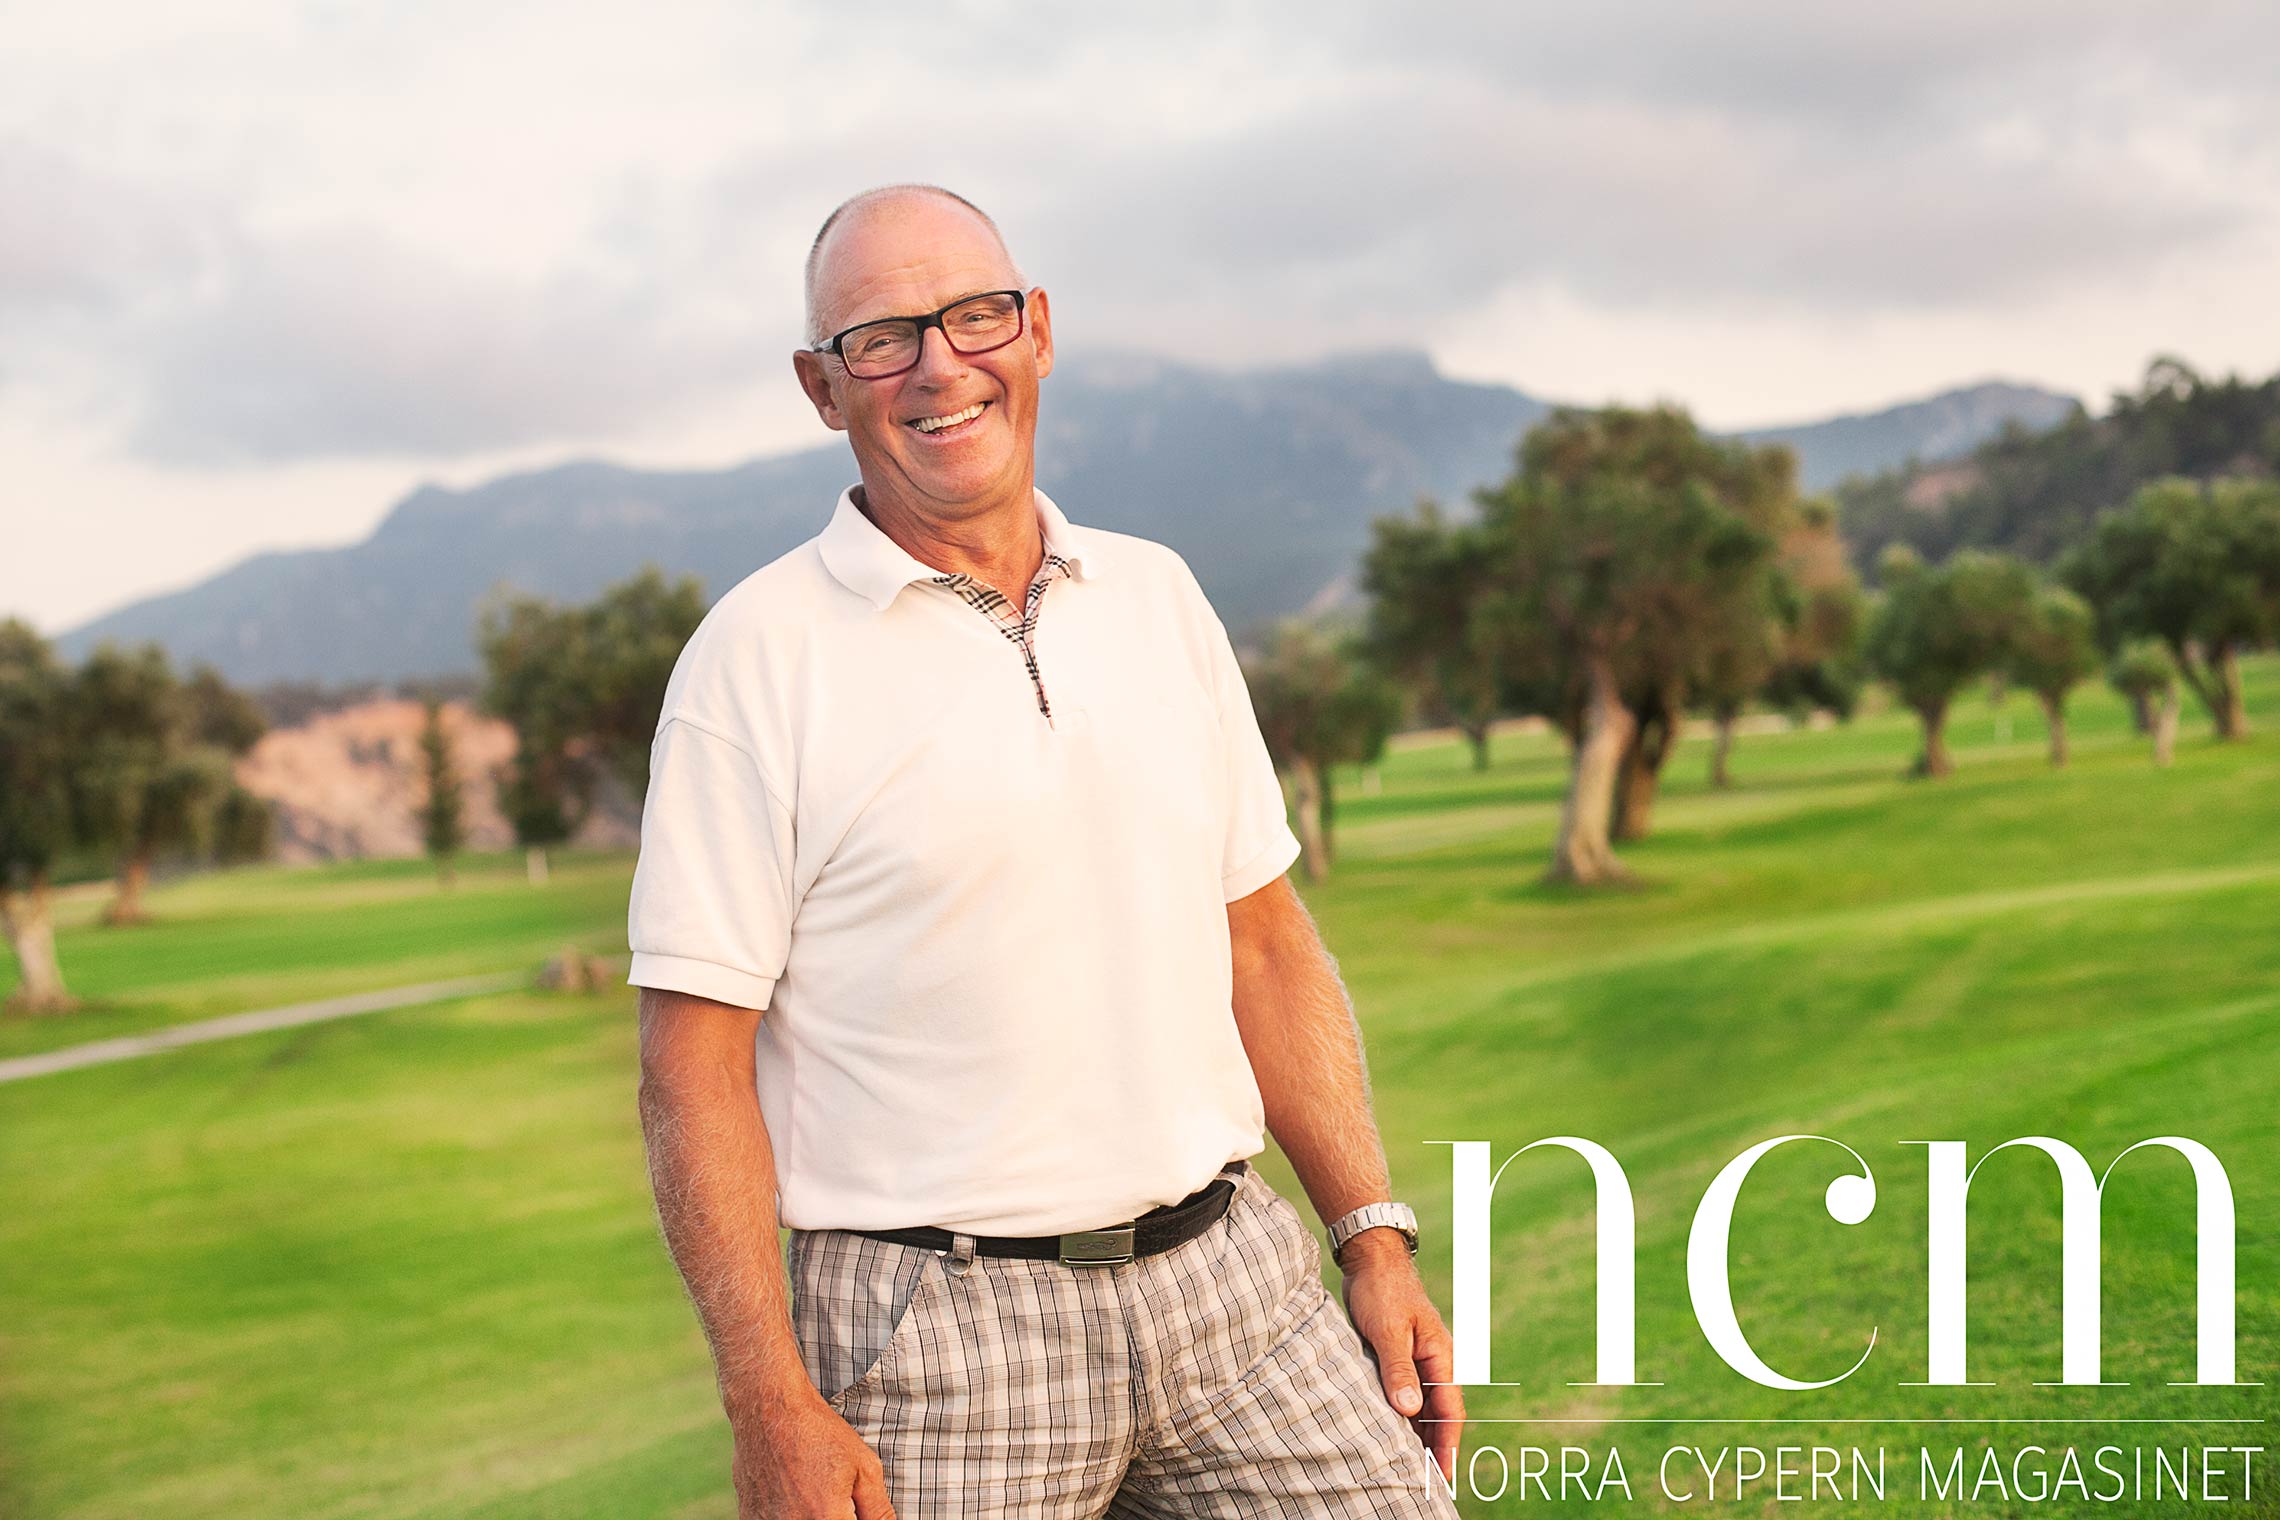 rolf är en svensk golfare som spelar golf på golfbanan korineum på norra cypern